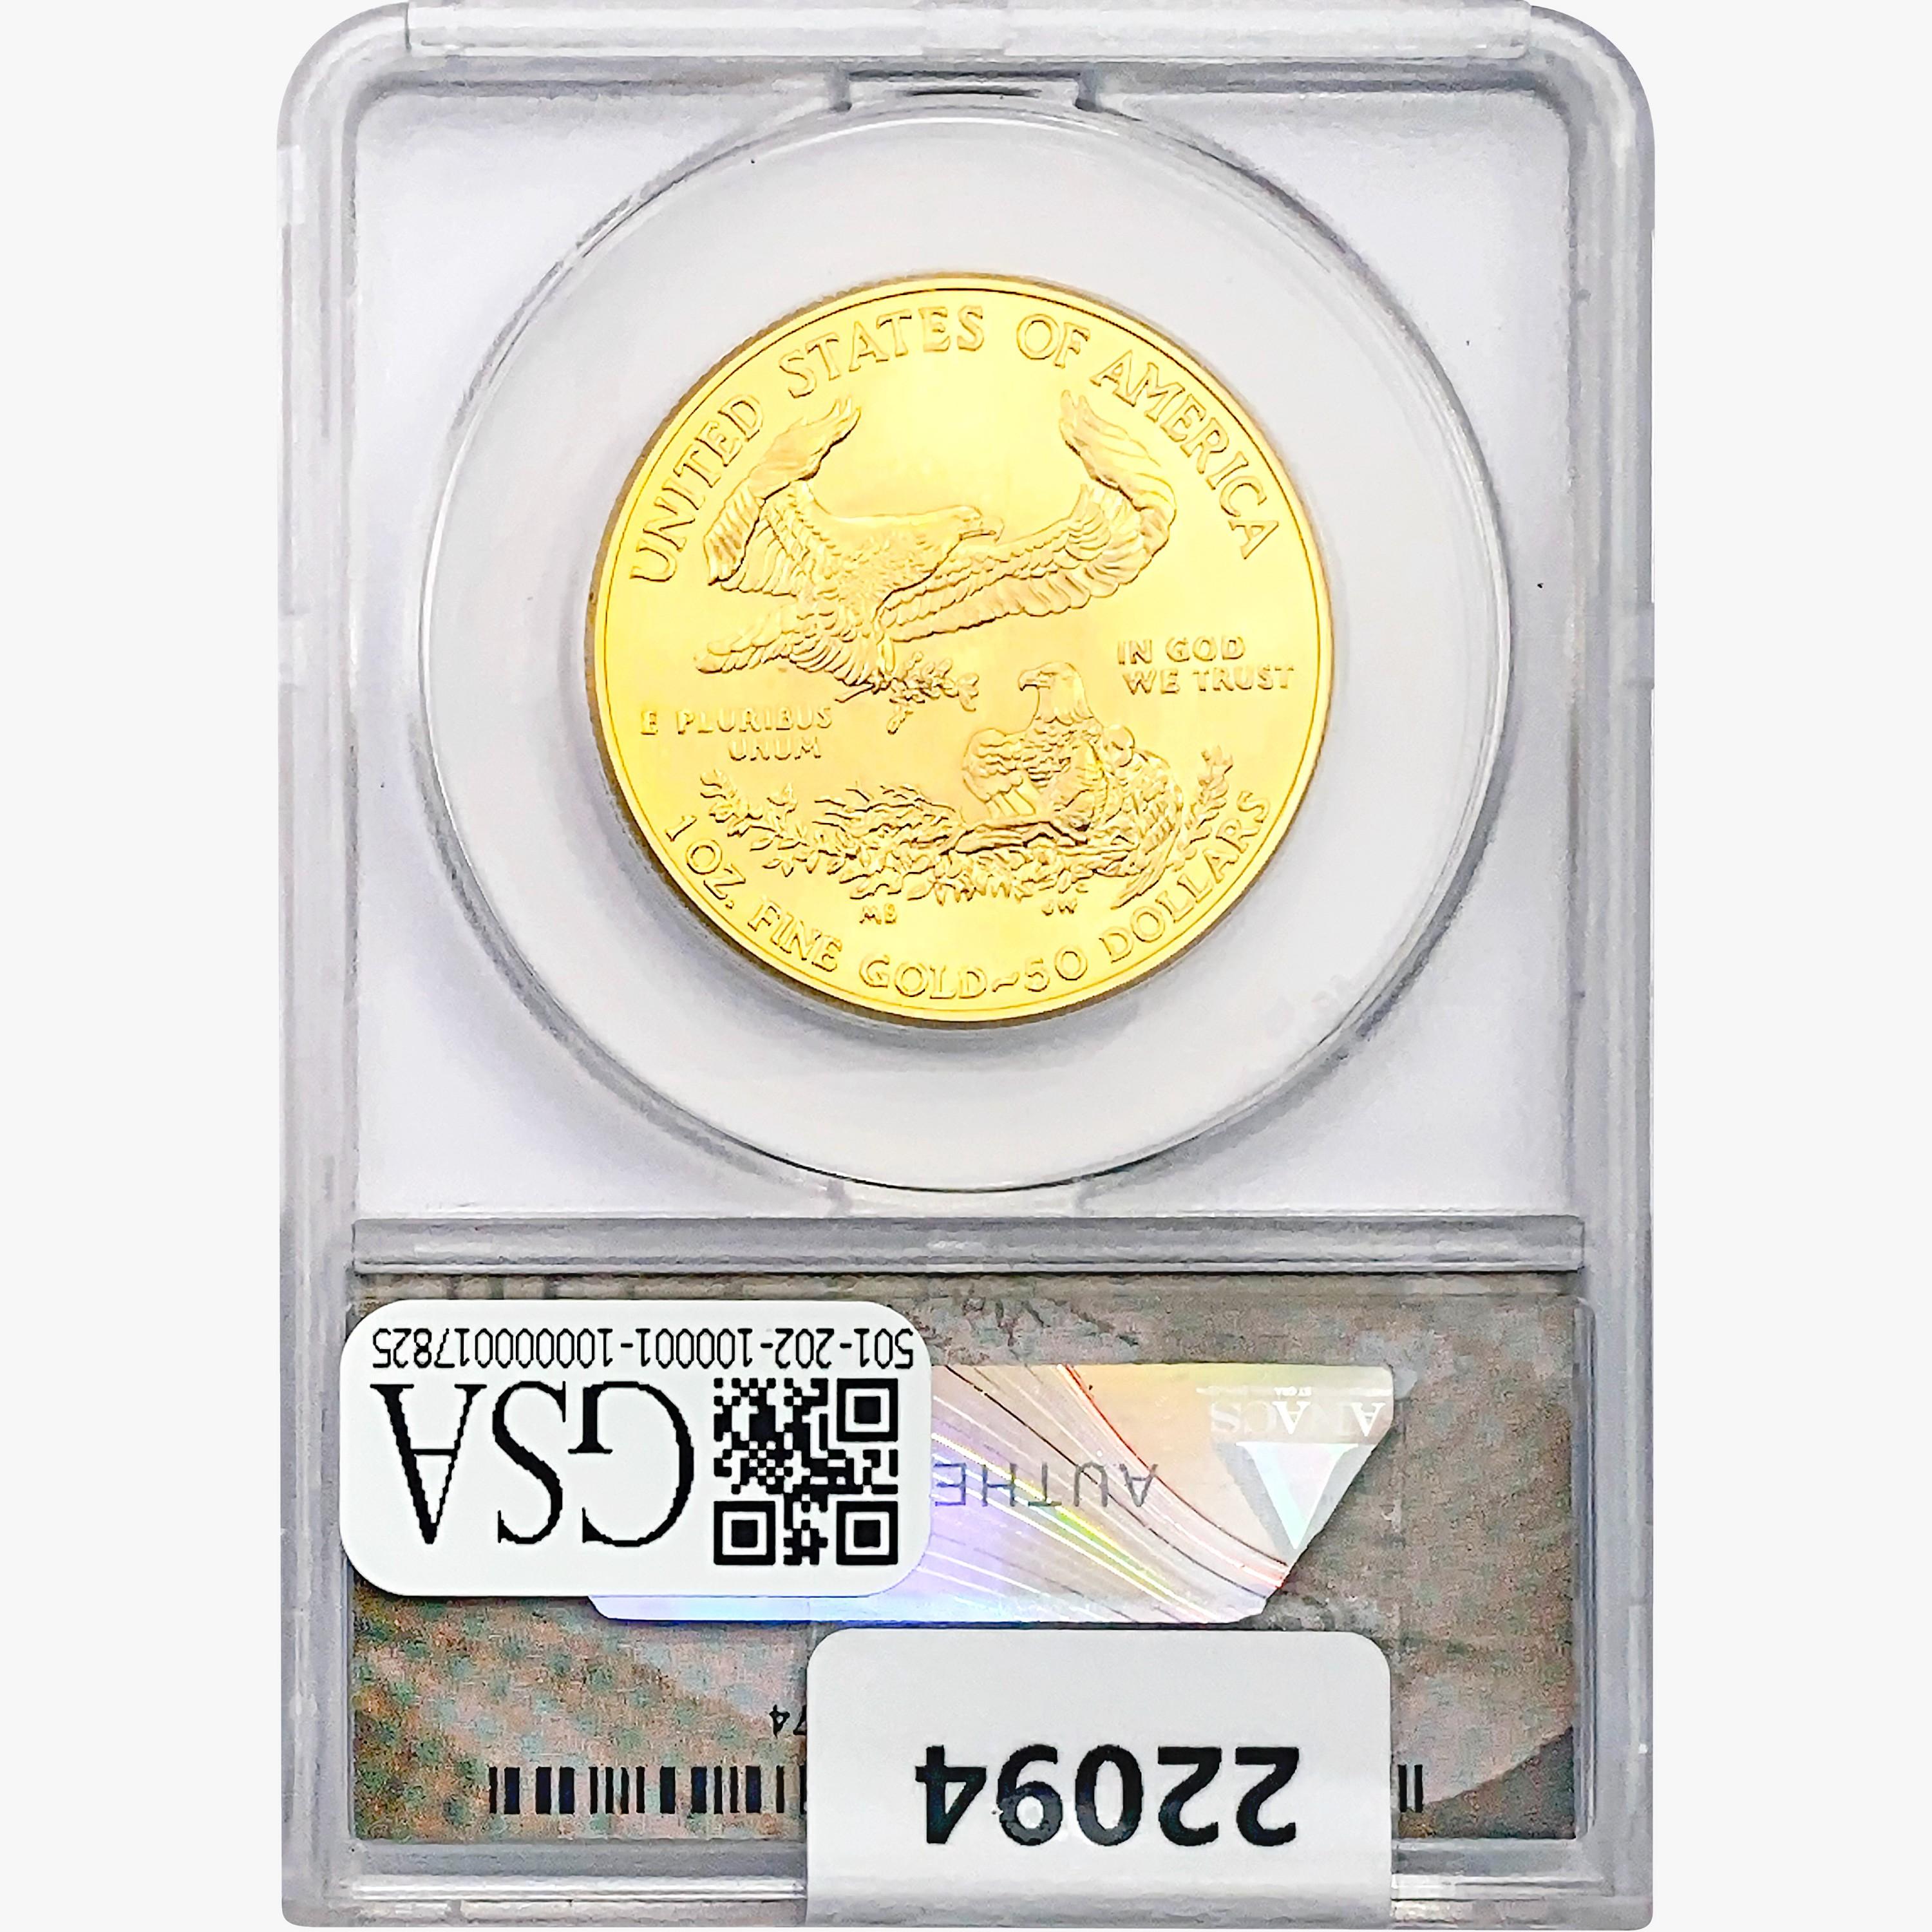 2017 $50 1oz. Gold Eagle Set ANACS MS70